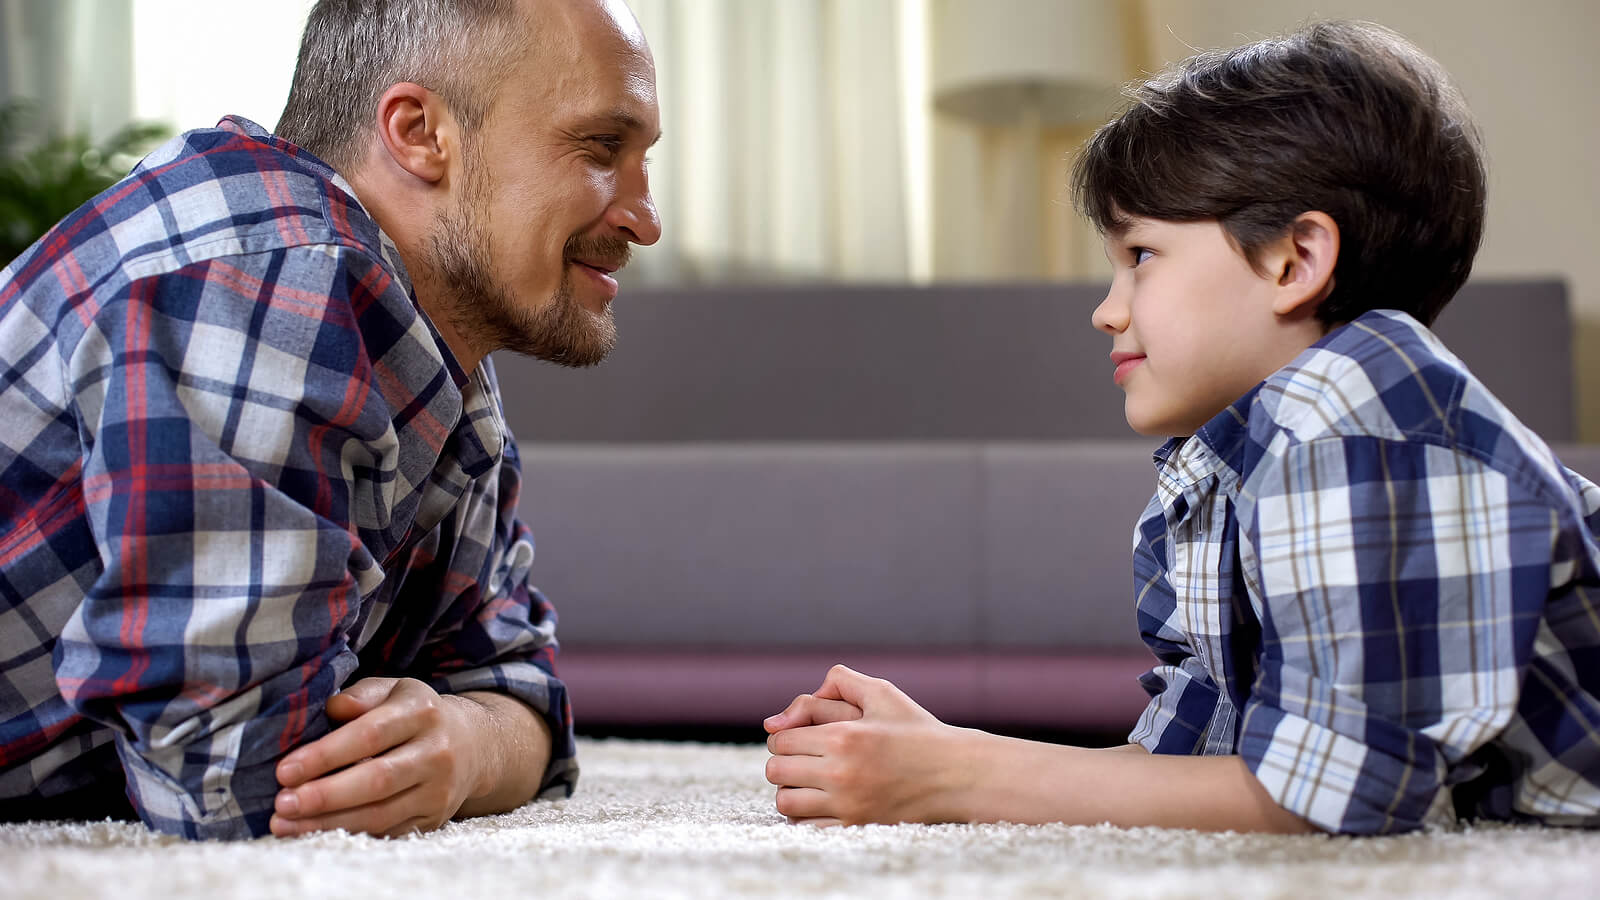 Padre hablando con su hijo utilizando alternativas educativas en lugar de prohibir.